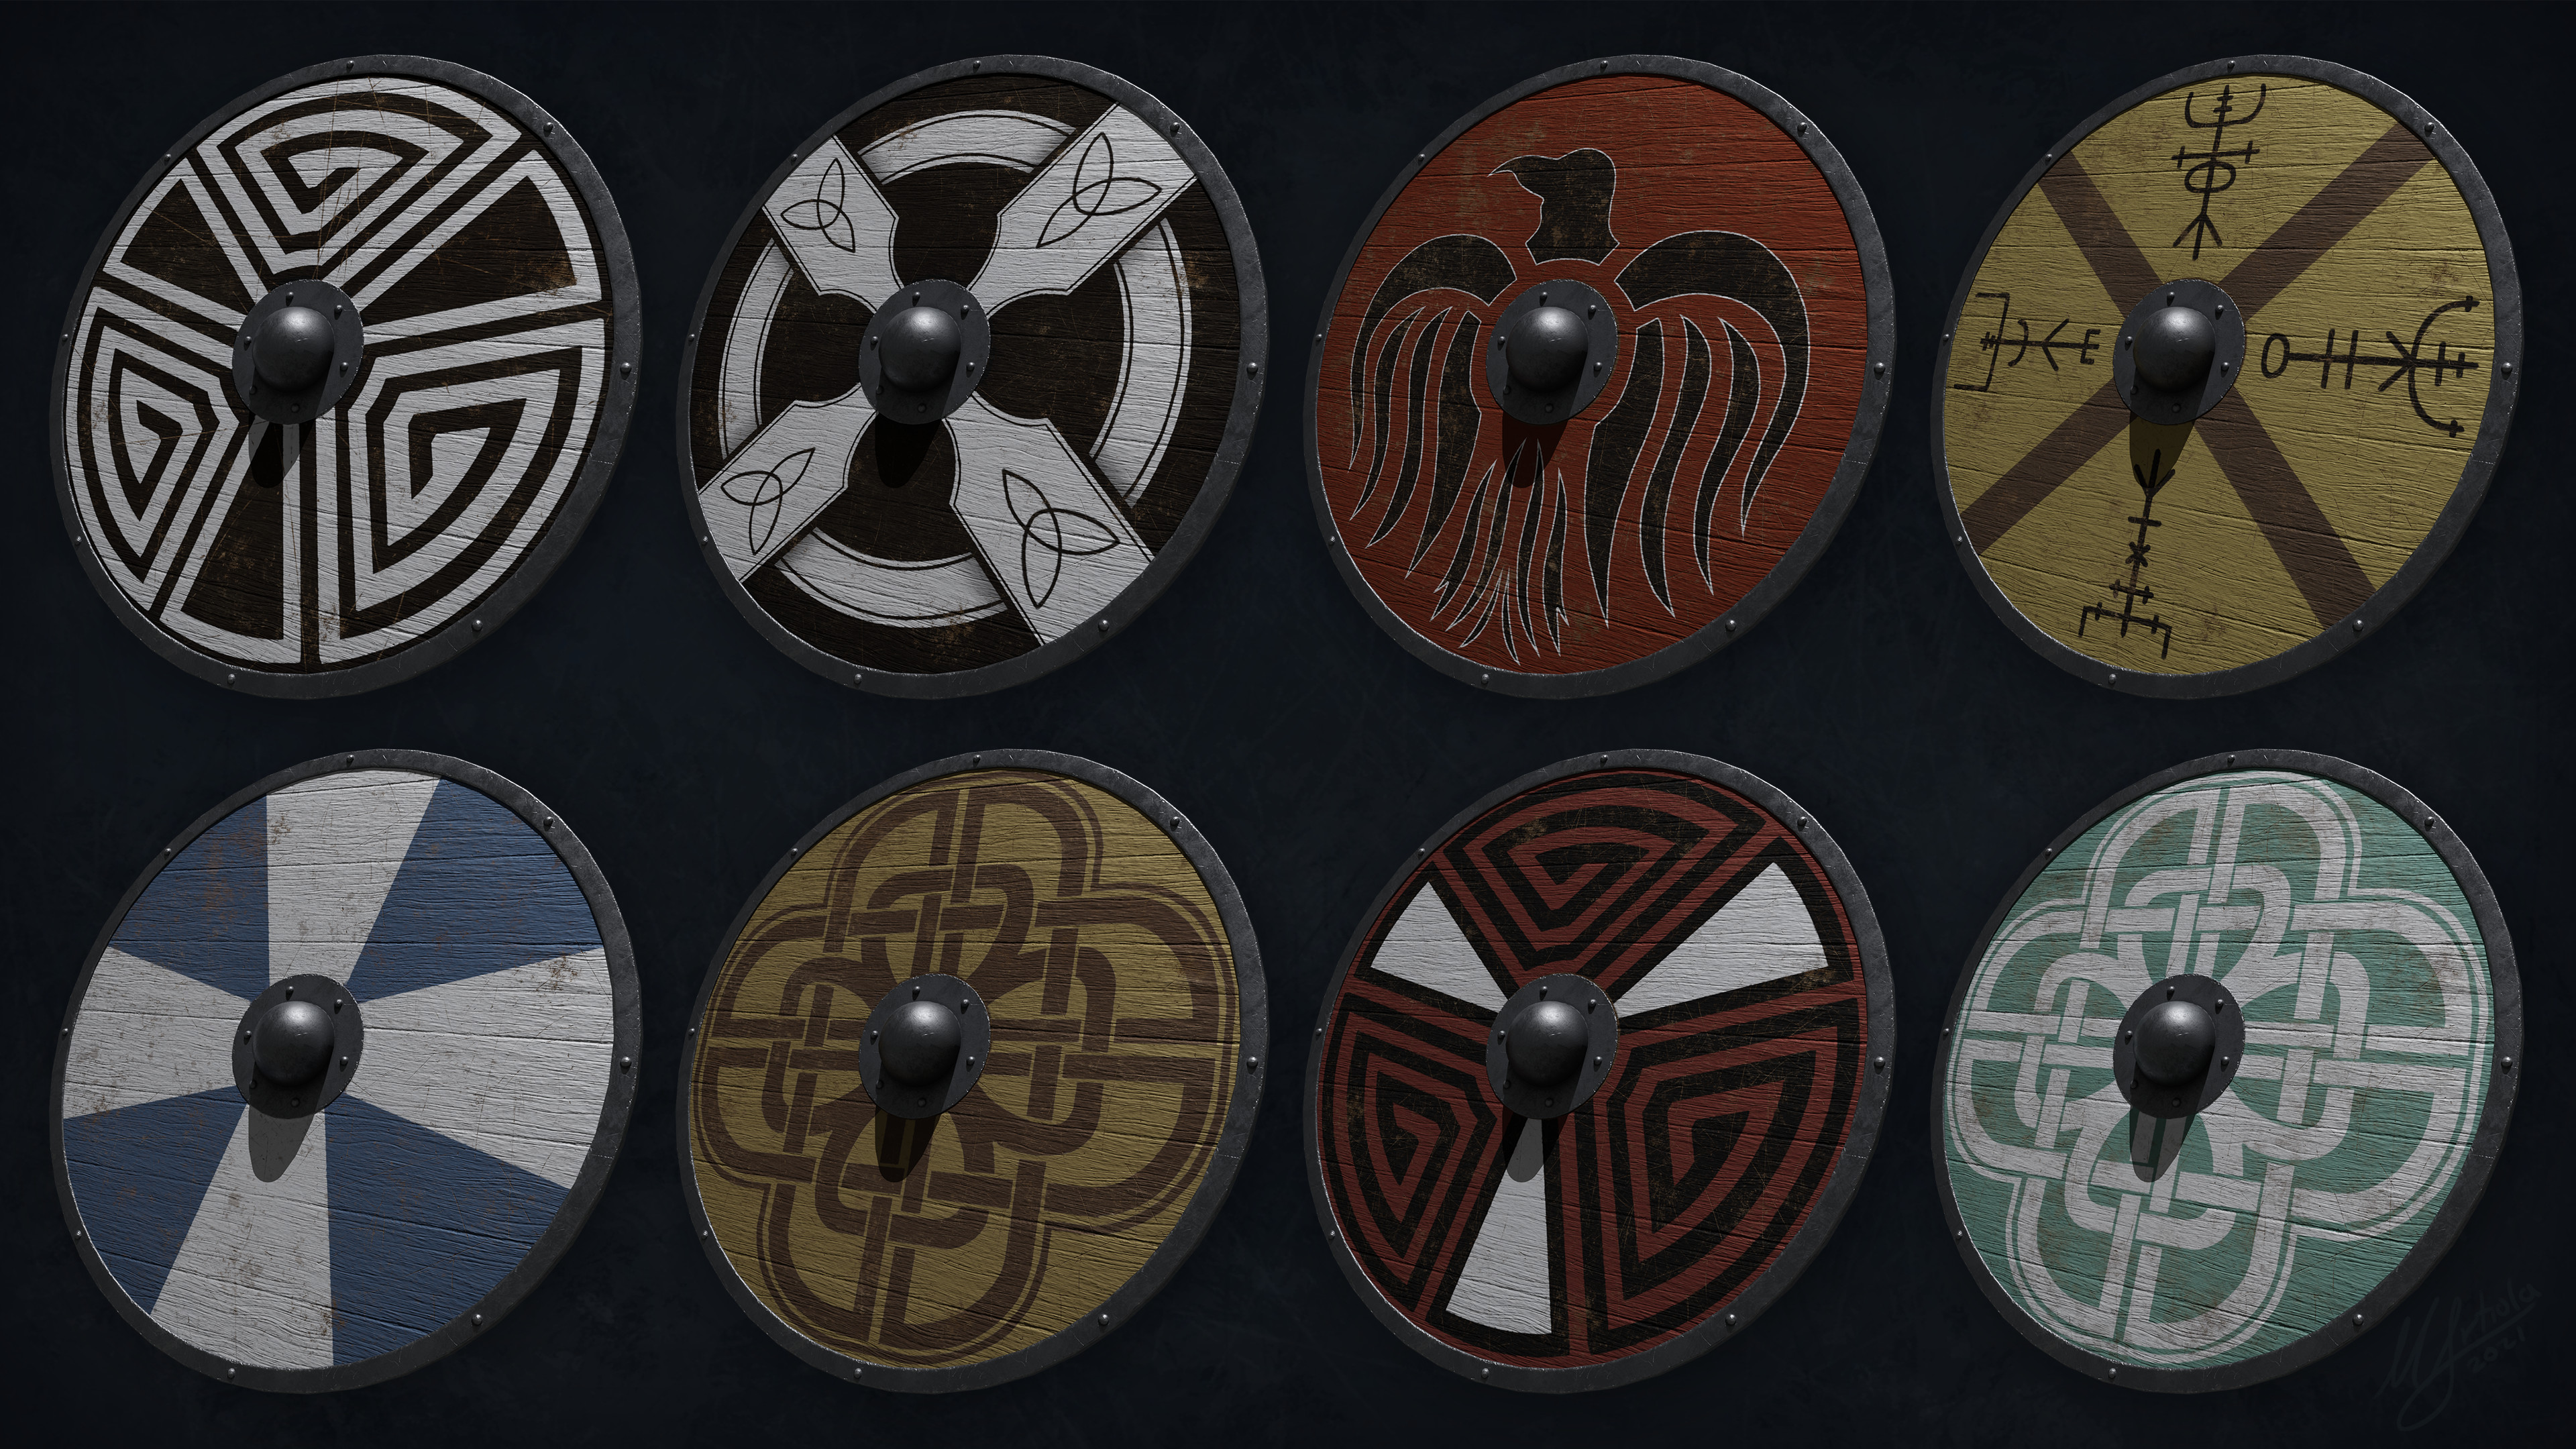 Final shields